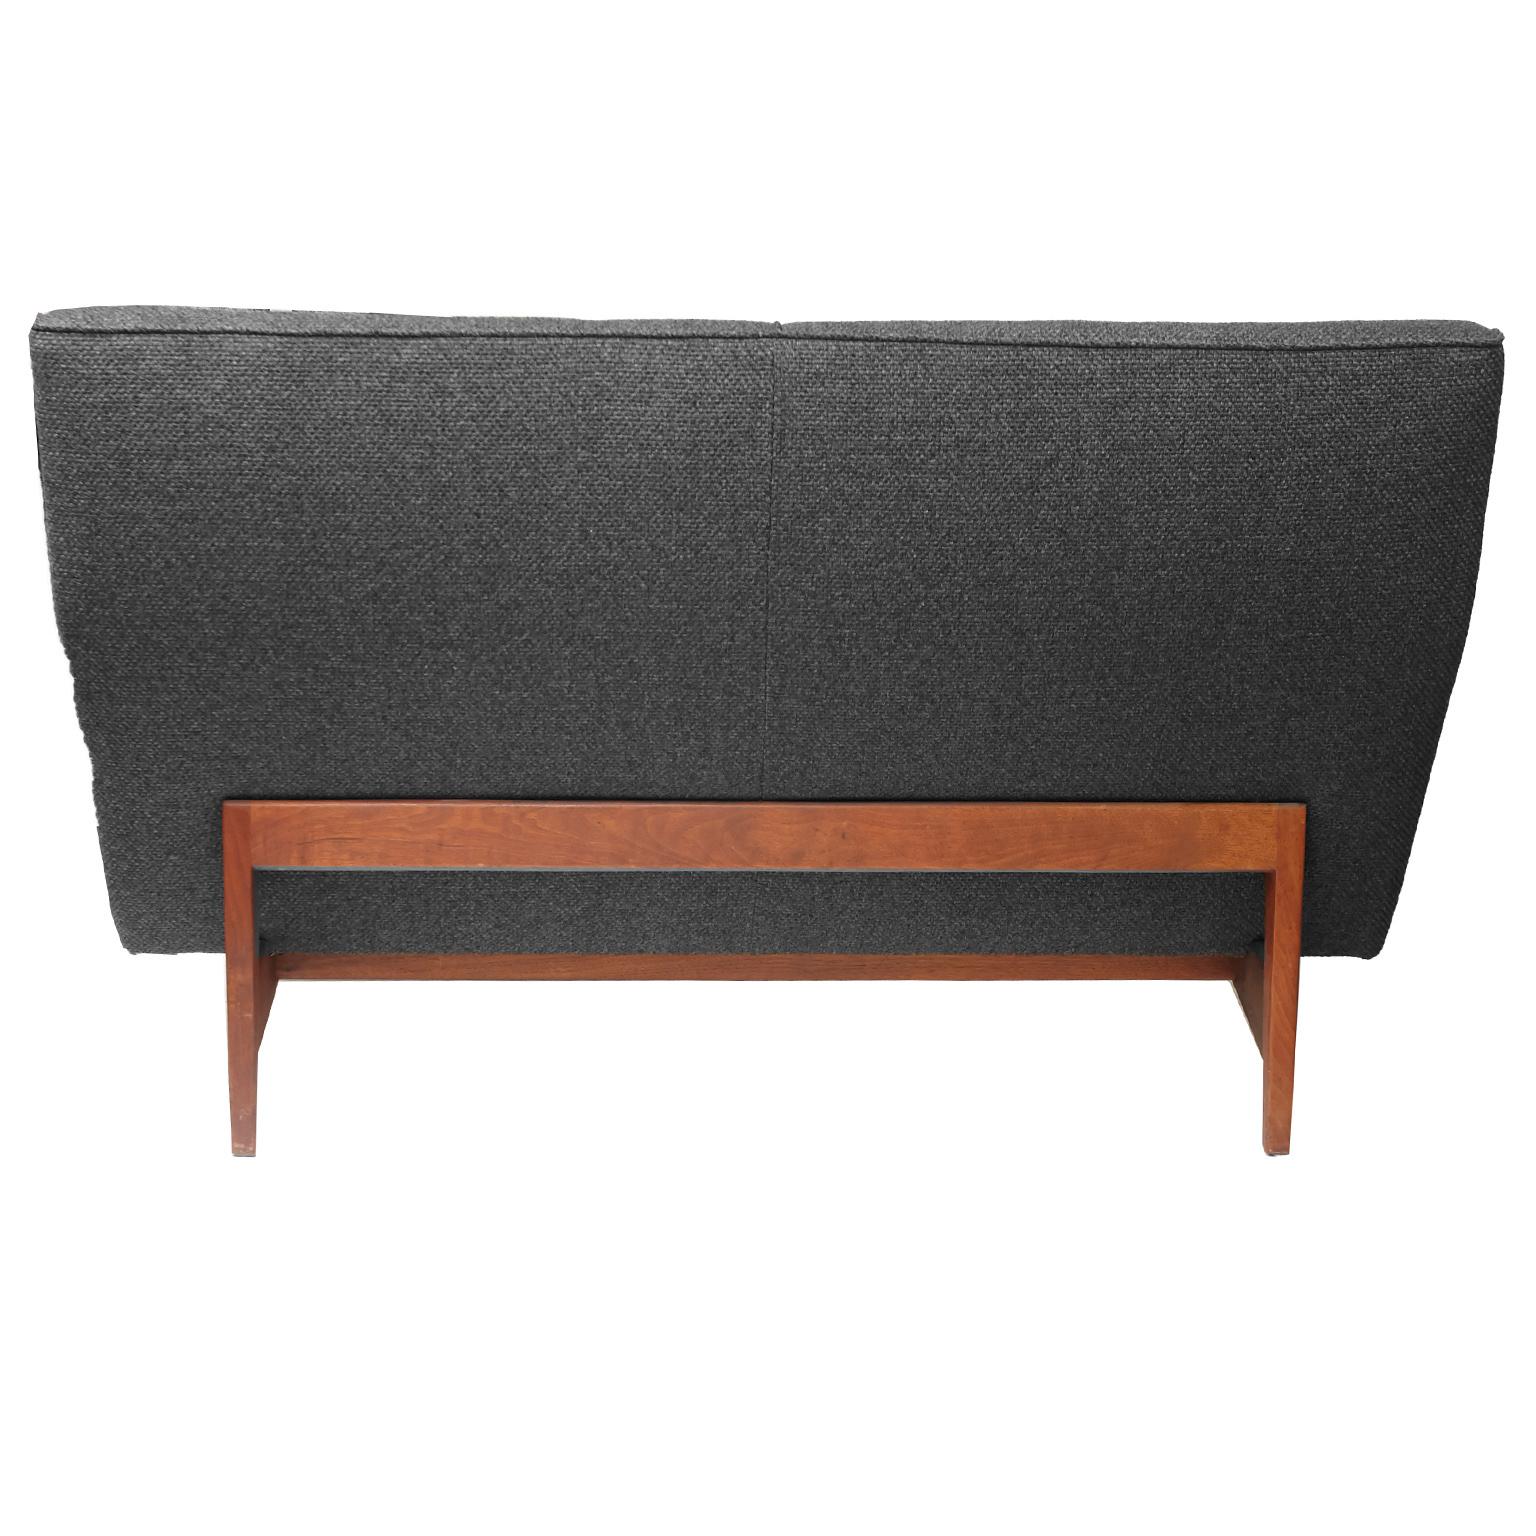 Jens Risom Charcoal Grey Sofa and Matching Love Seat Model U251 1